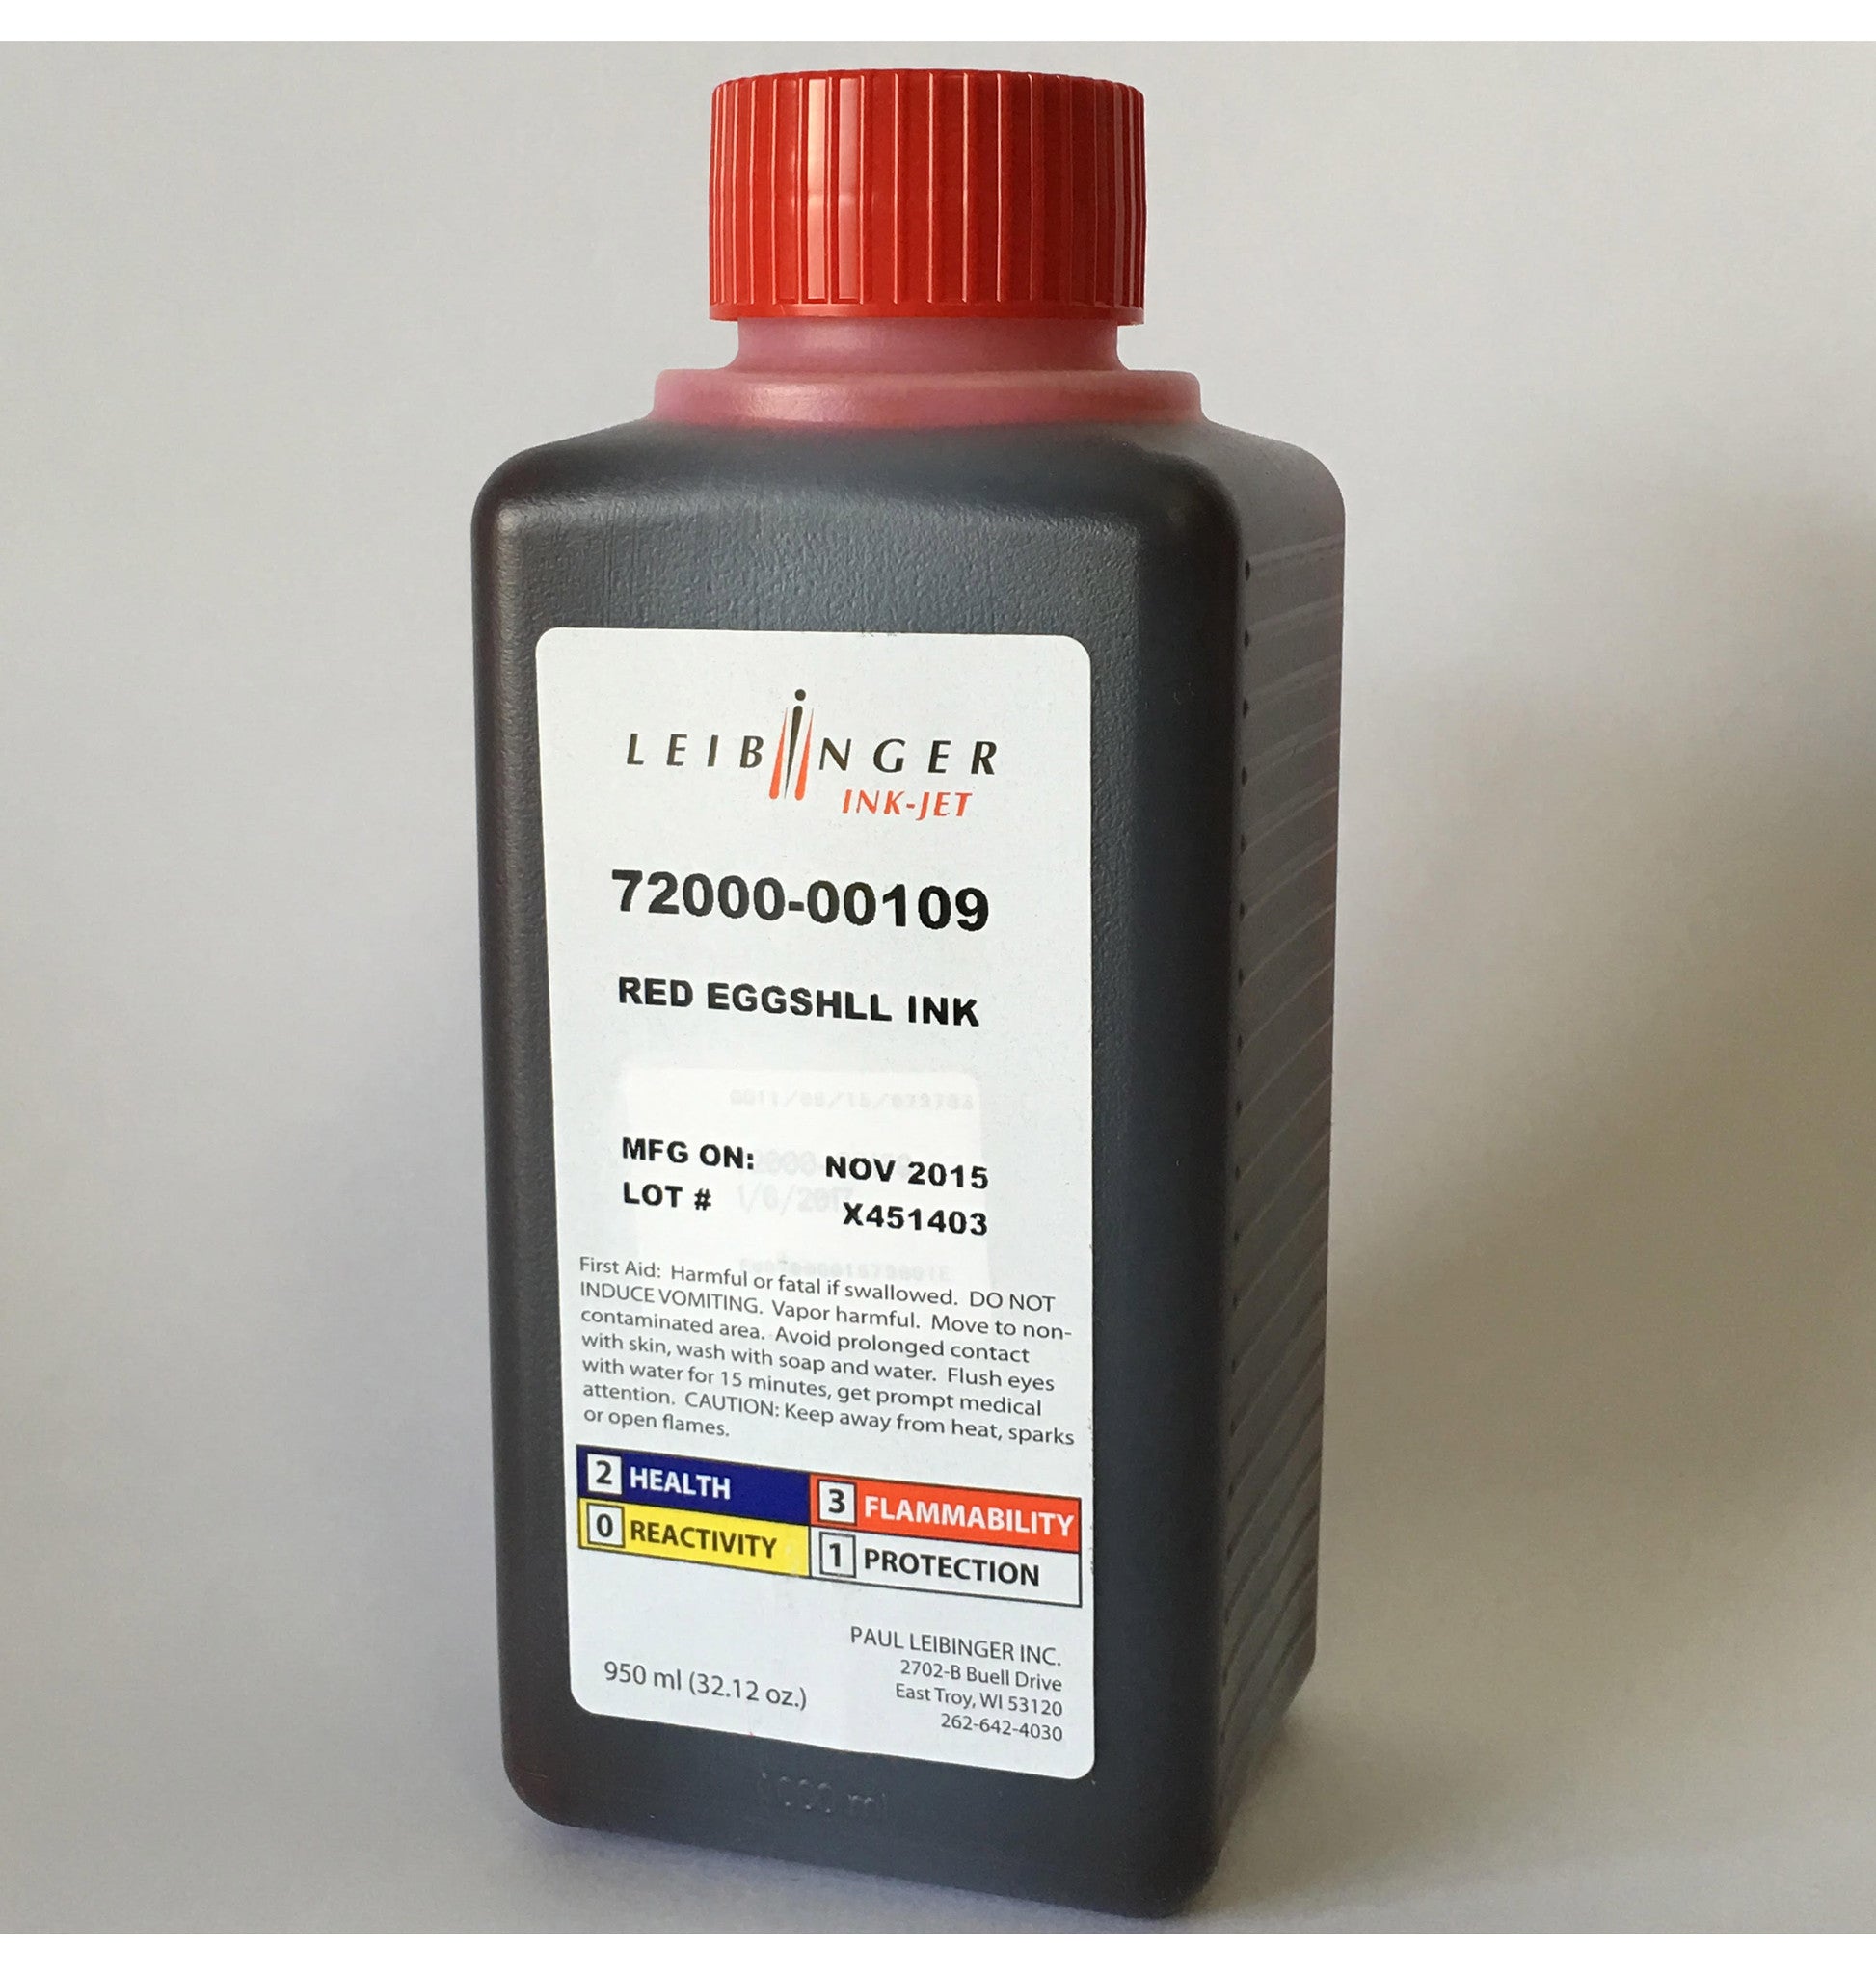 Leibinger Red Eggshell Ink (950 ml) 72000-00109